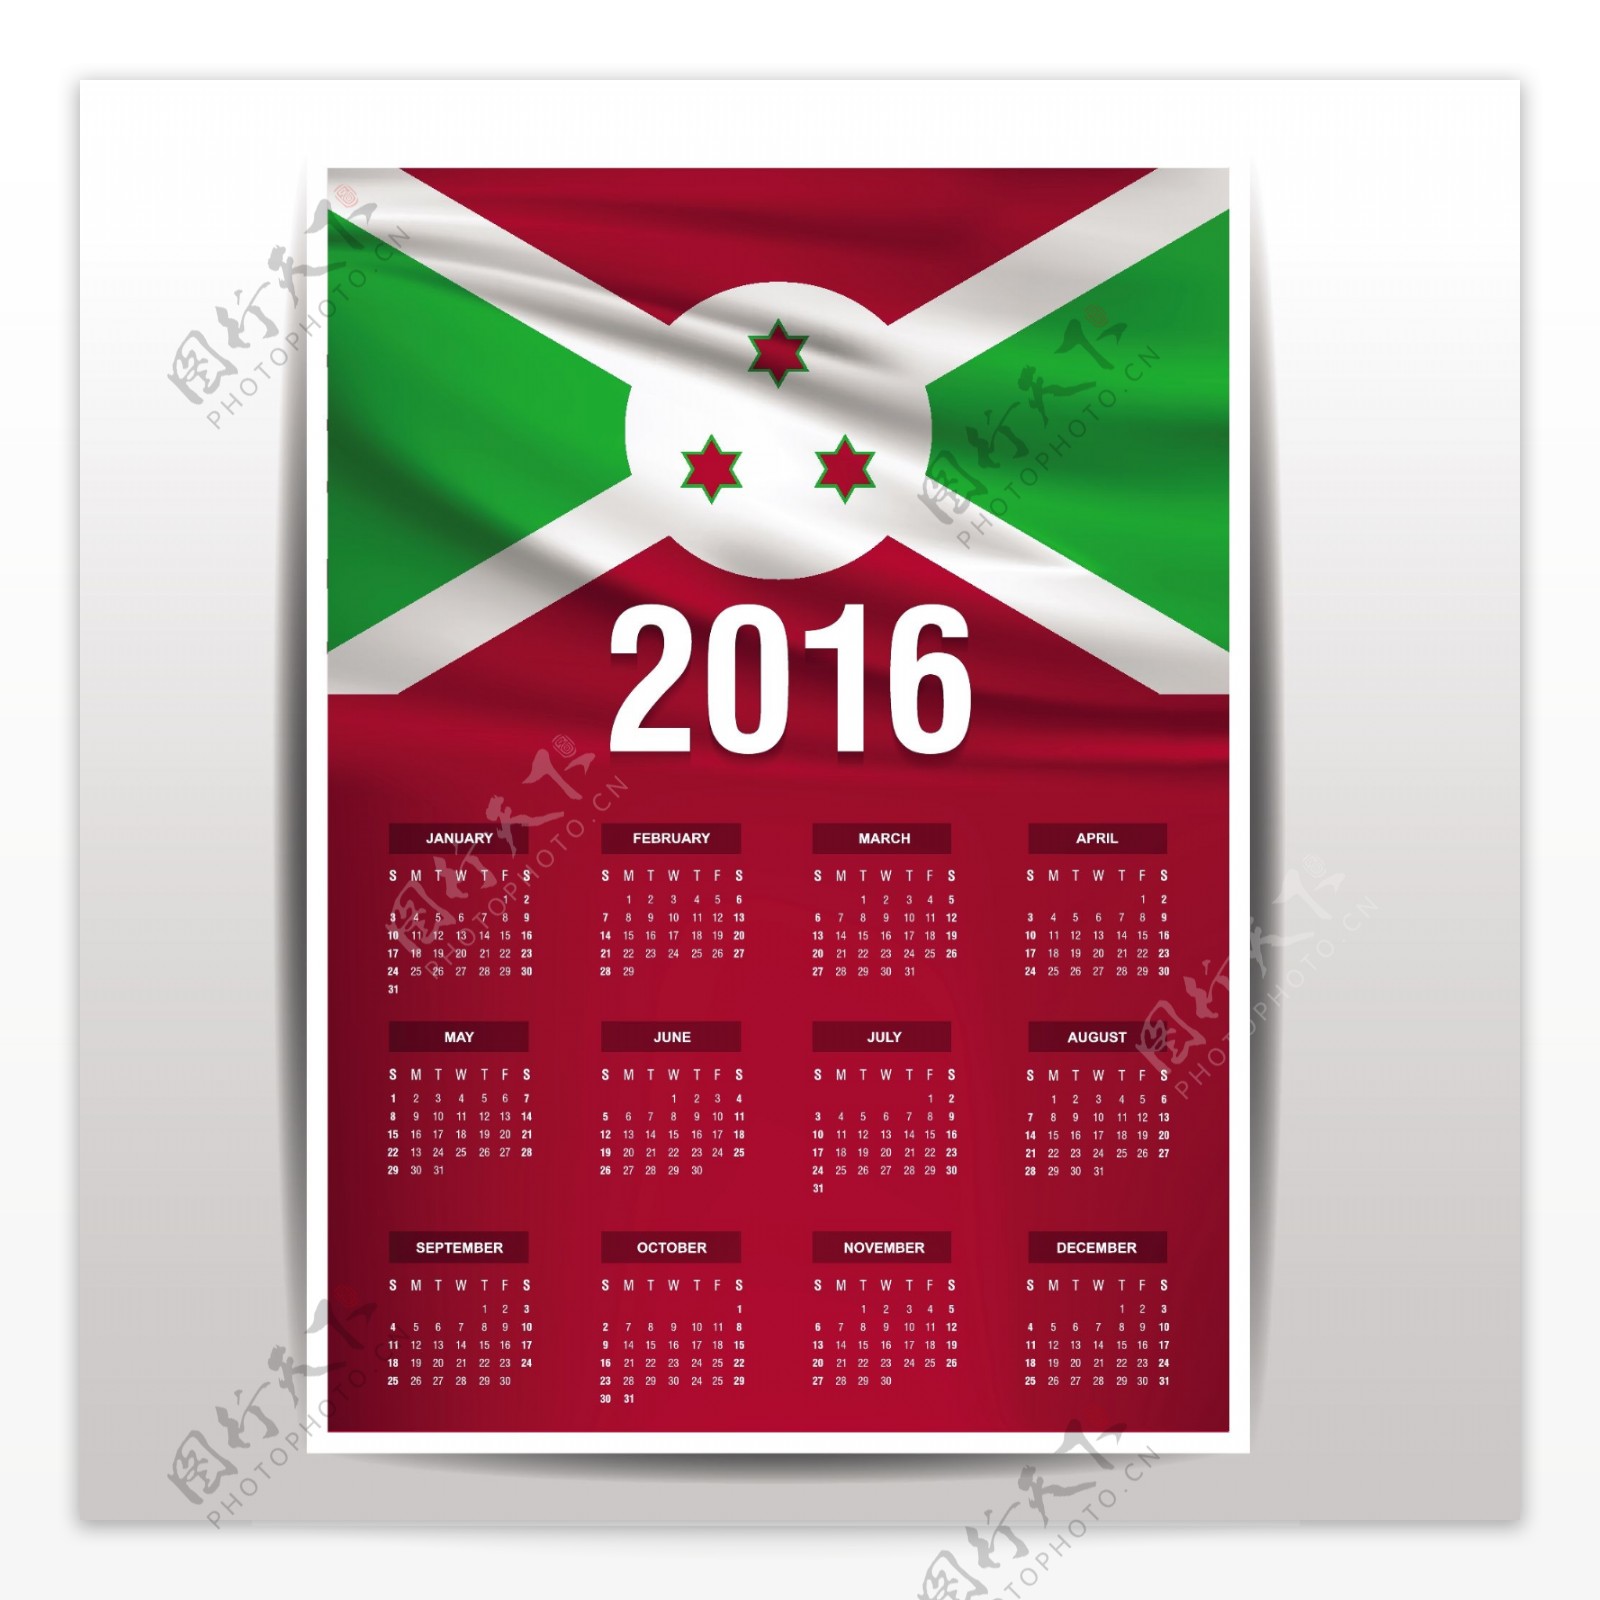 布隆迪2016日历